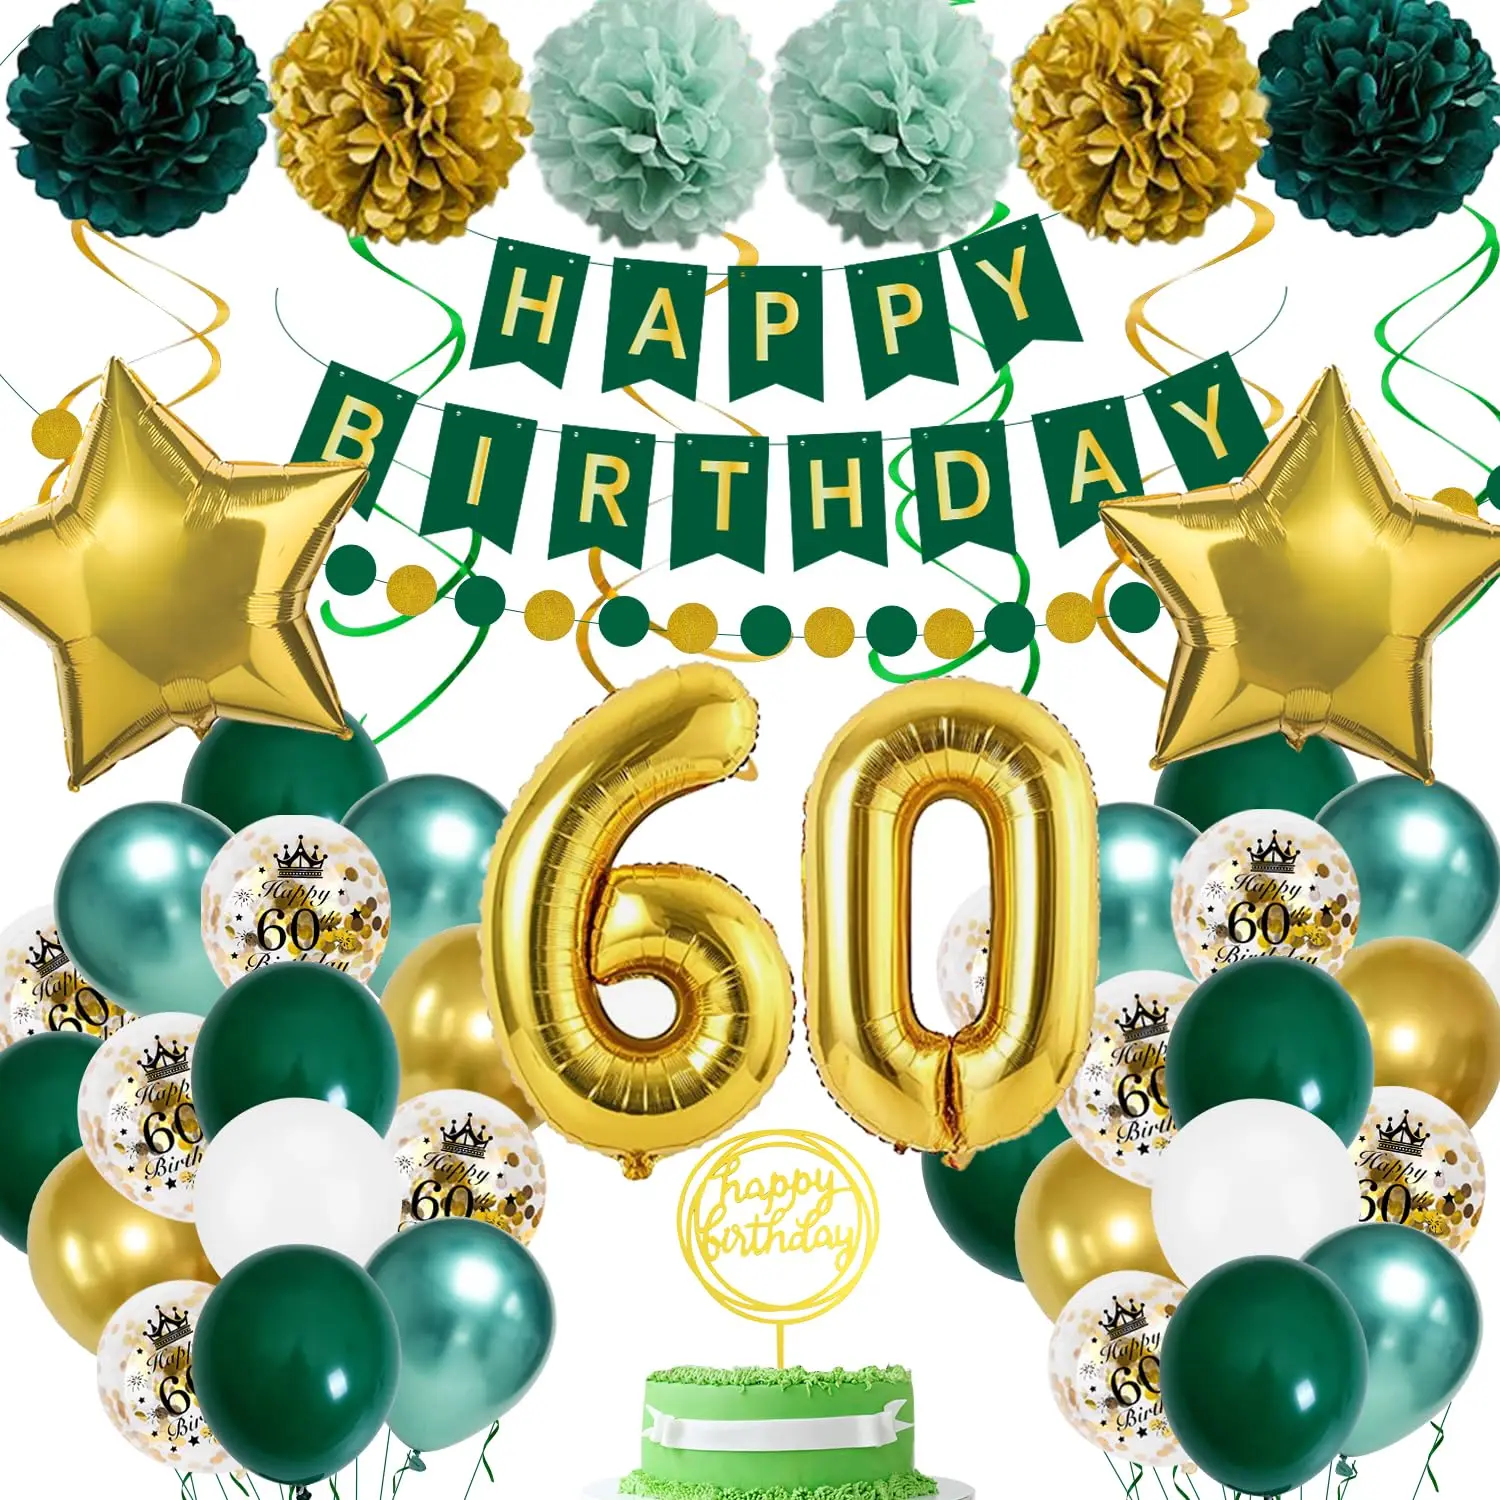 

Воздушный шар 60-го дня рождения, украшения для вечеринки 60-го дня рождения для мужчин и женщин, зеленый, золотой воздушный шар, воздушные шары со звездой, бумажные помпоны